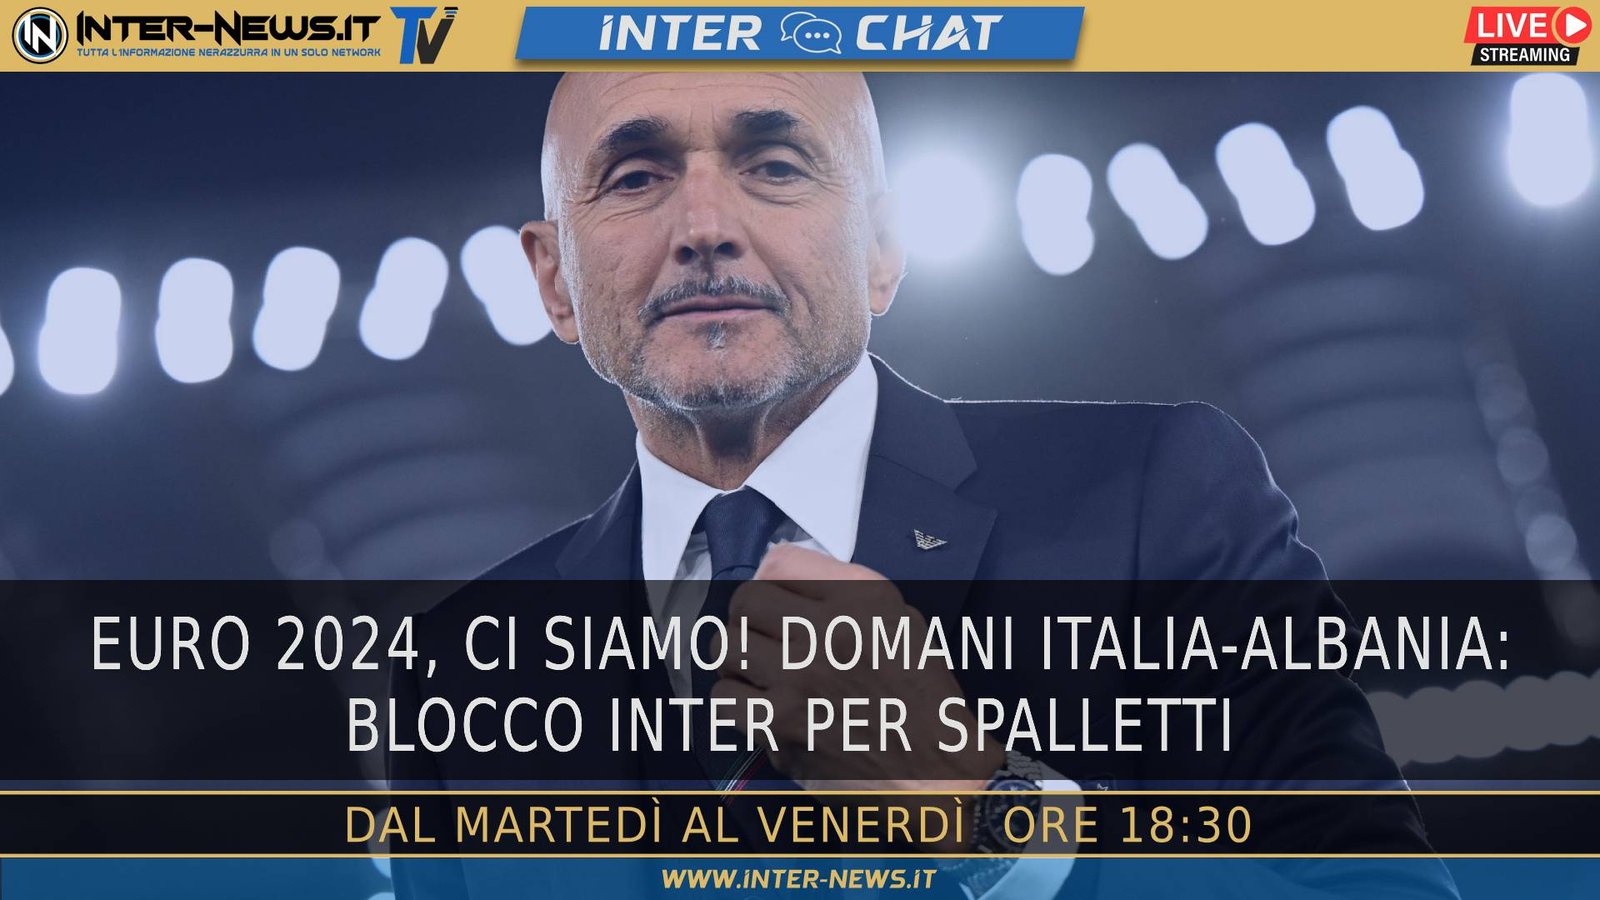 Euro 2024, ci siamo! Italia Albania col blocco Inter | Inter Chat LIVE